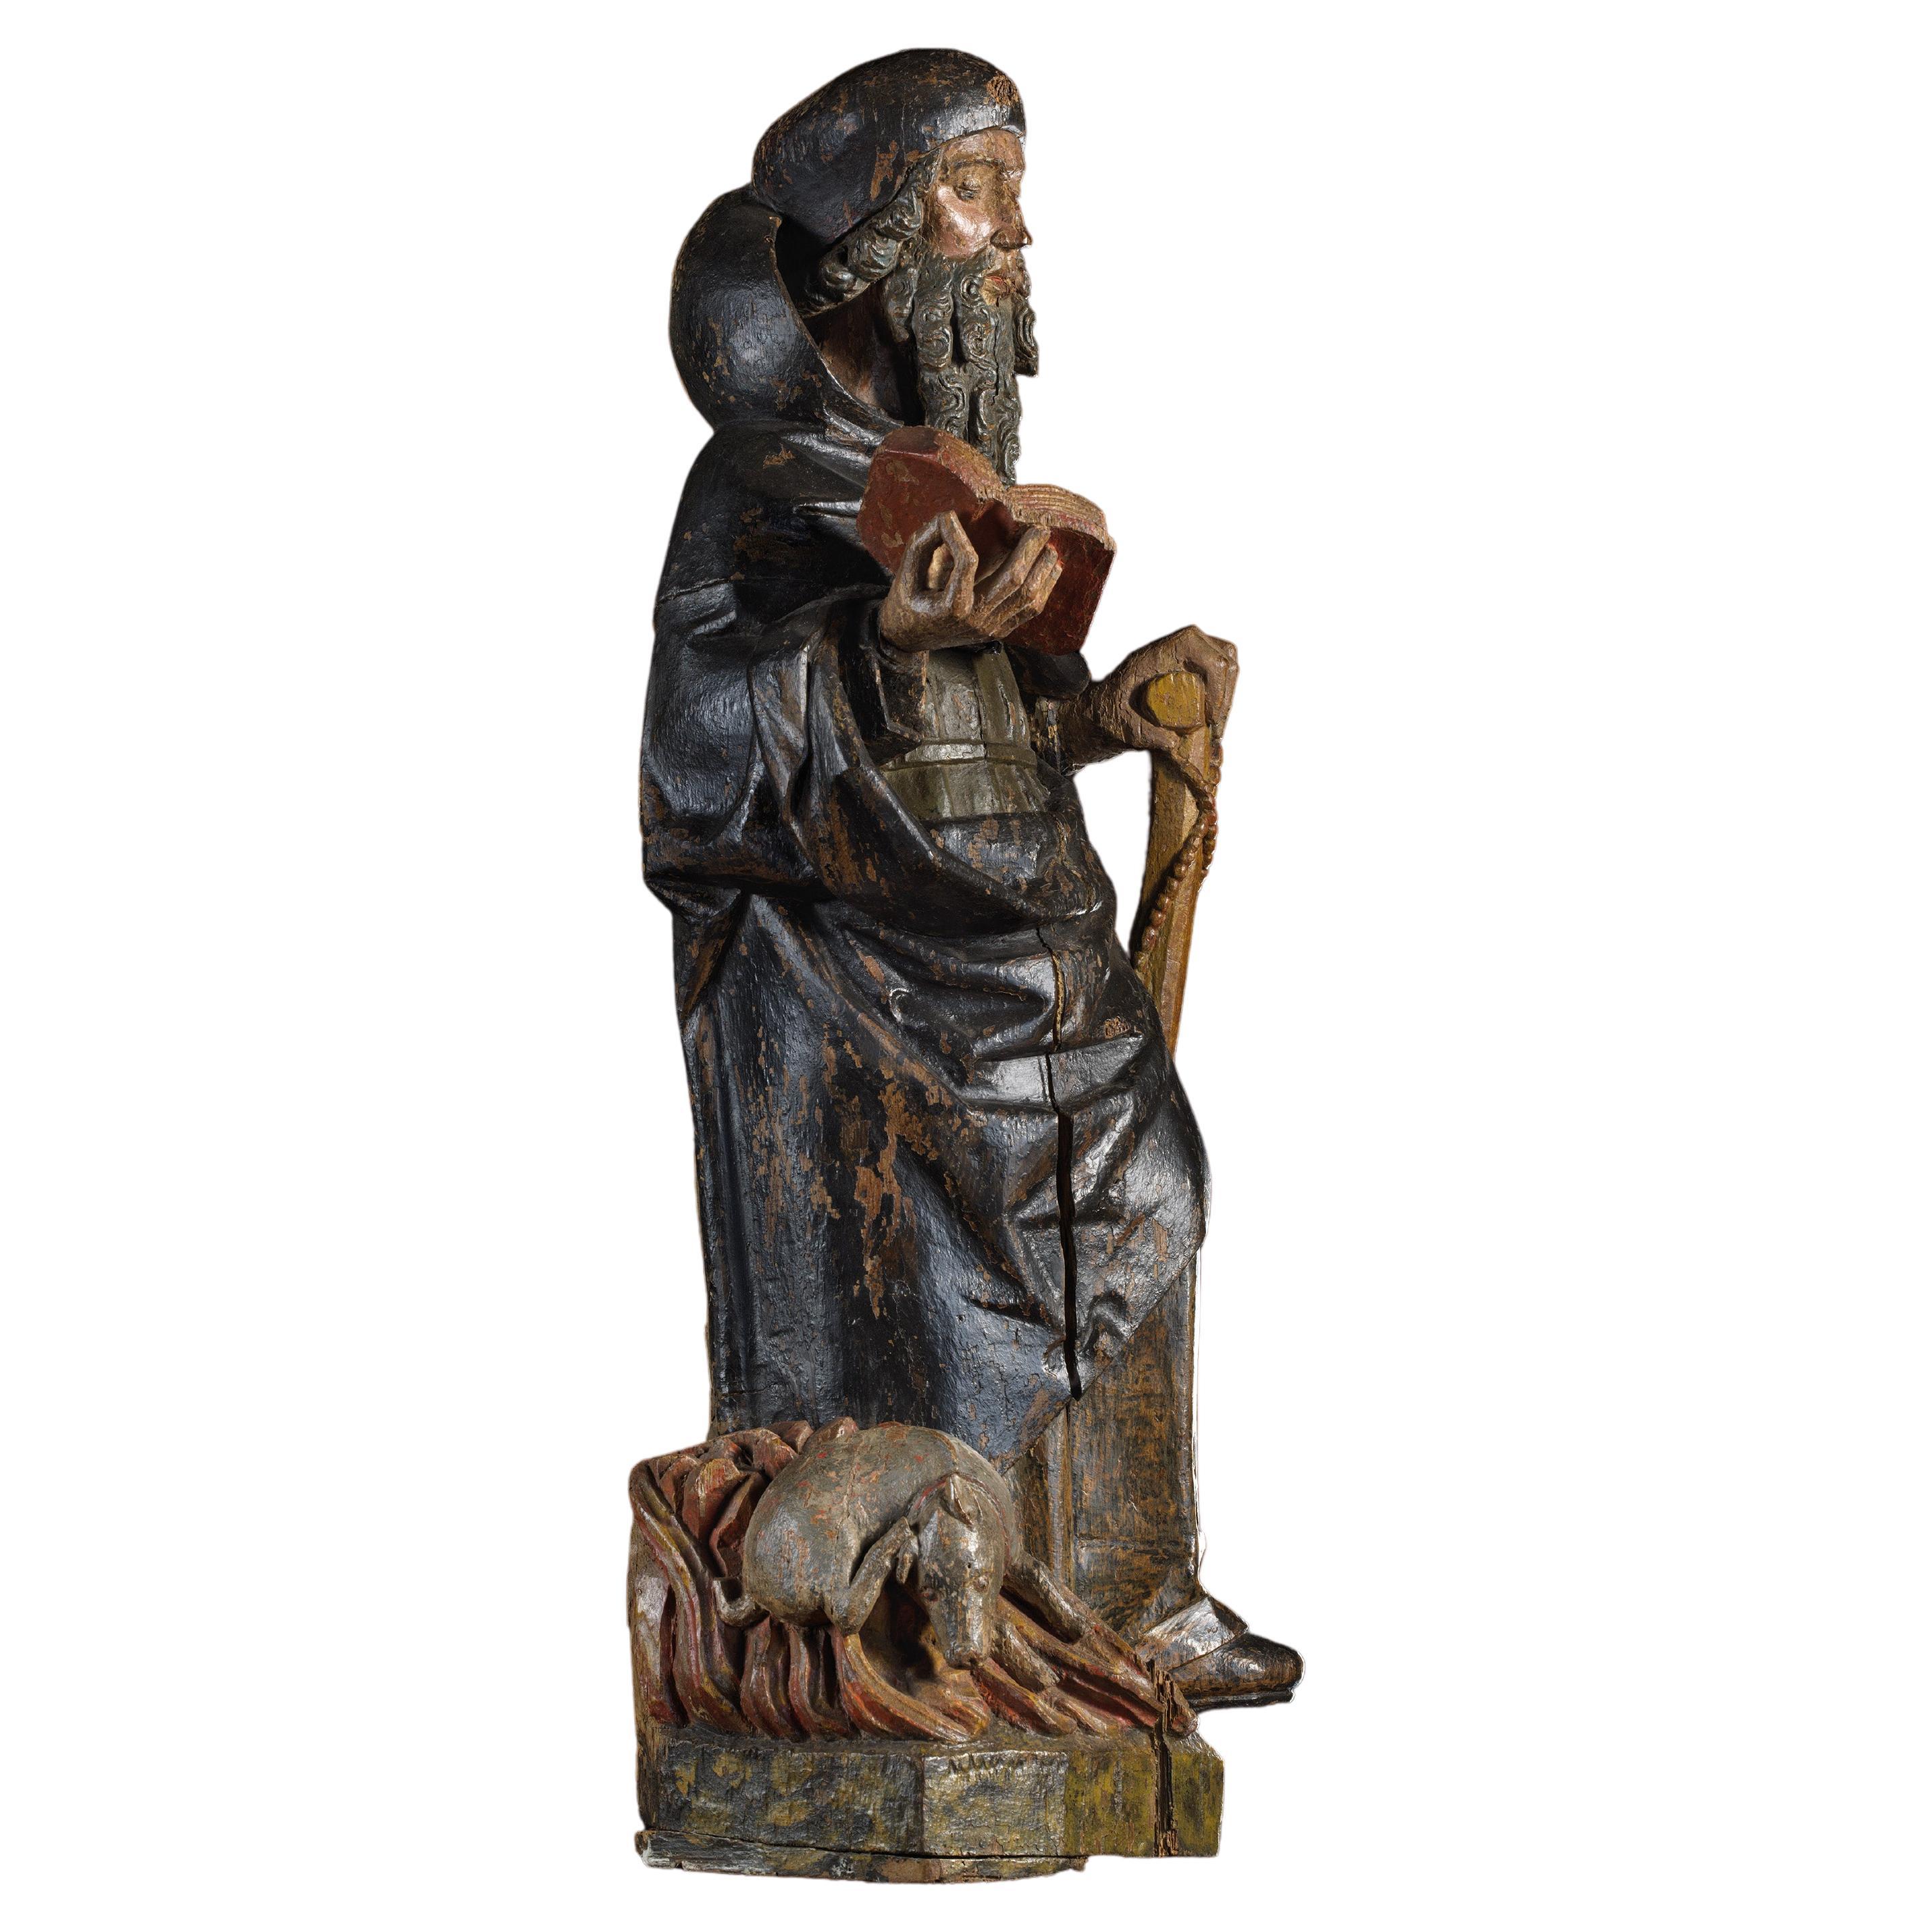 Skulptur aus polychromem Holz, die den Heiligen Antonius als Ermit darstellt